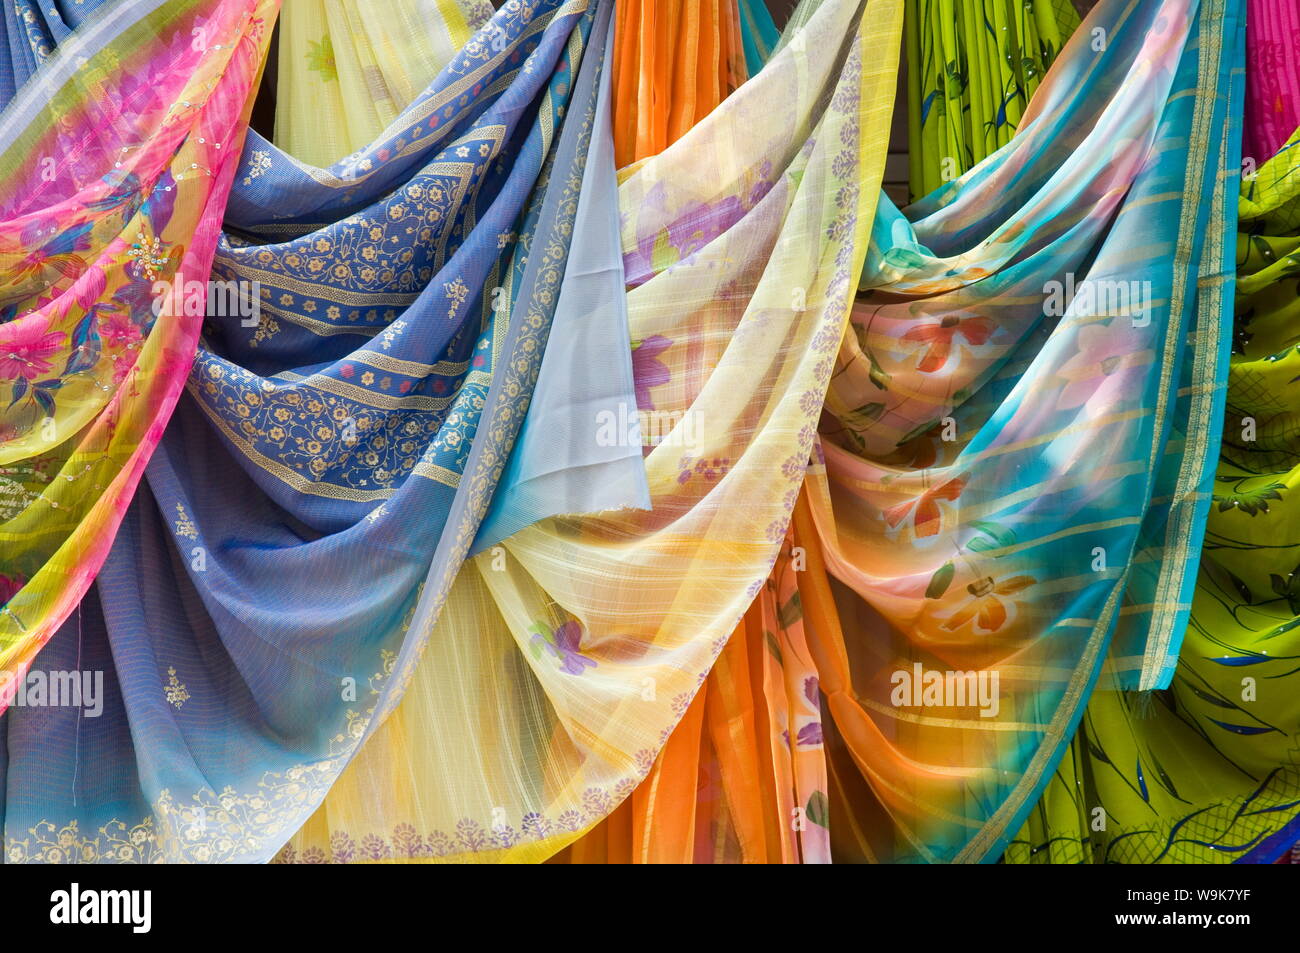 Célèbre pour sa part les tissus,Maheshwar, Madhya Pradesh, Inde Banque D'Images